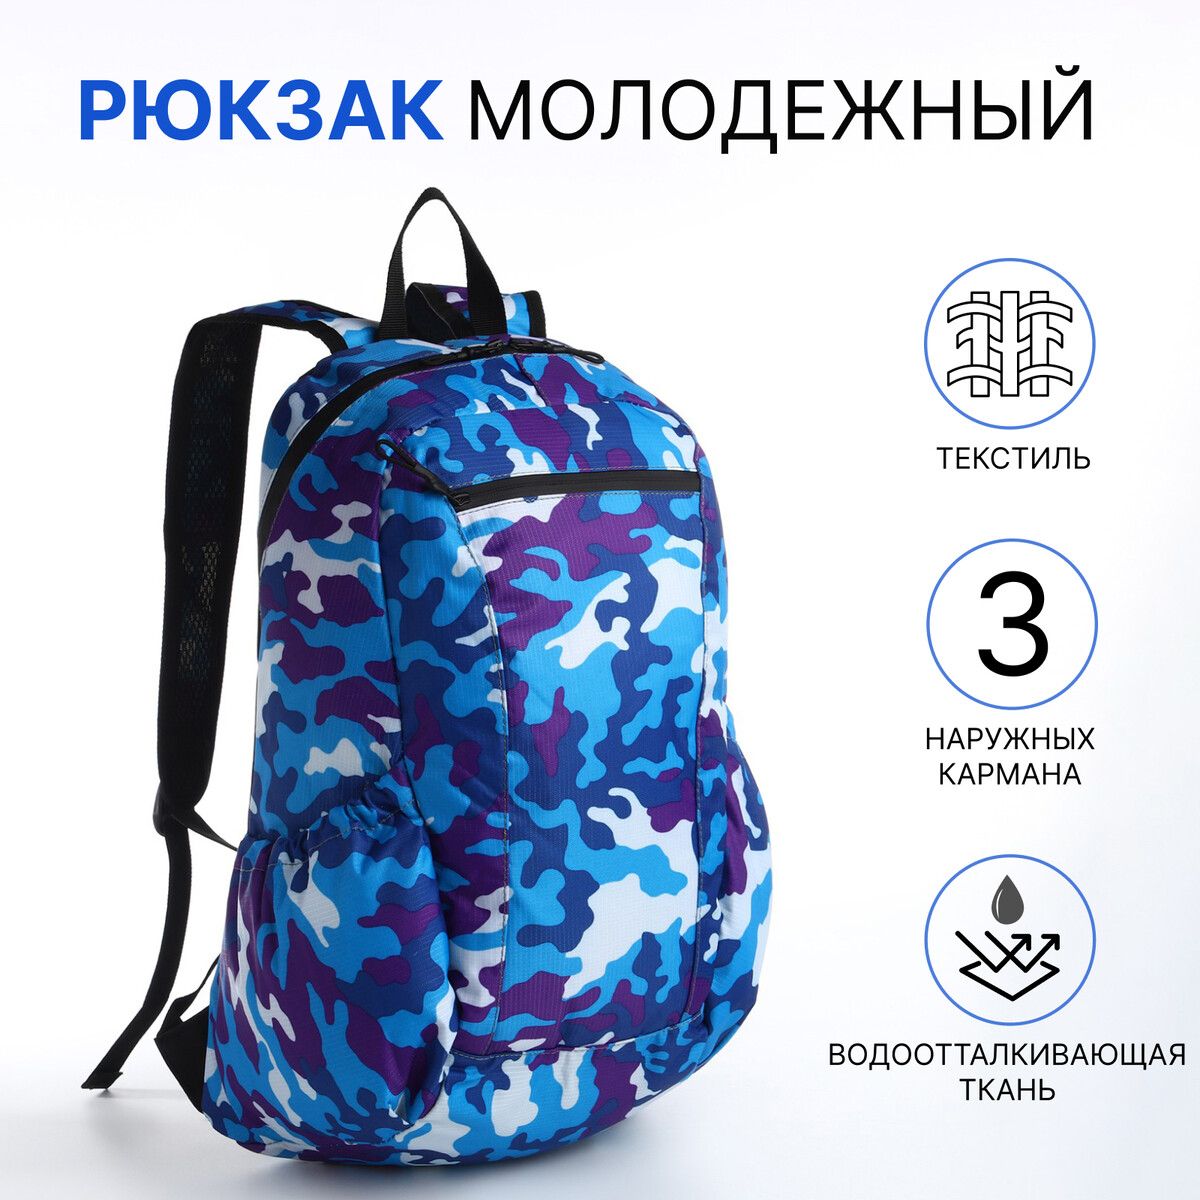 Рюкзак молодежный, водонепроницаемый на молнии, 3 кармана, цвет синий рюкзак сумка из текстиля на молнии 3 кармана отдел для ноутбука синий